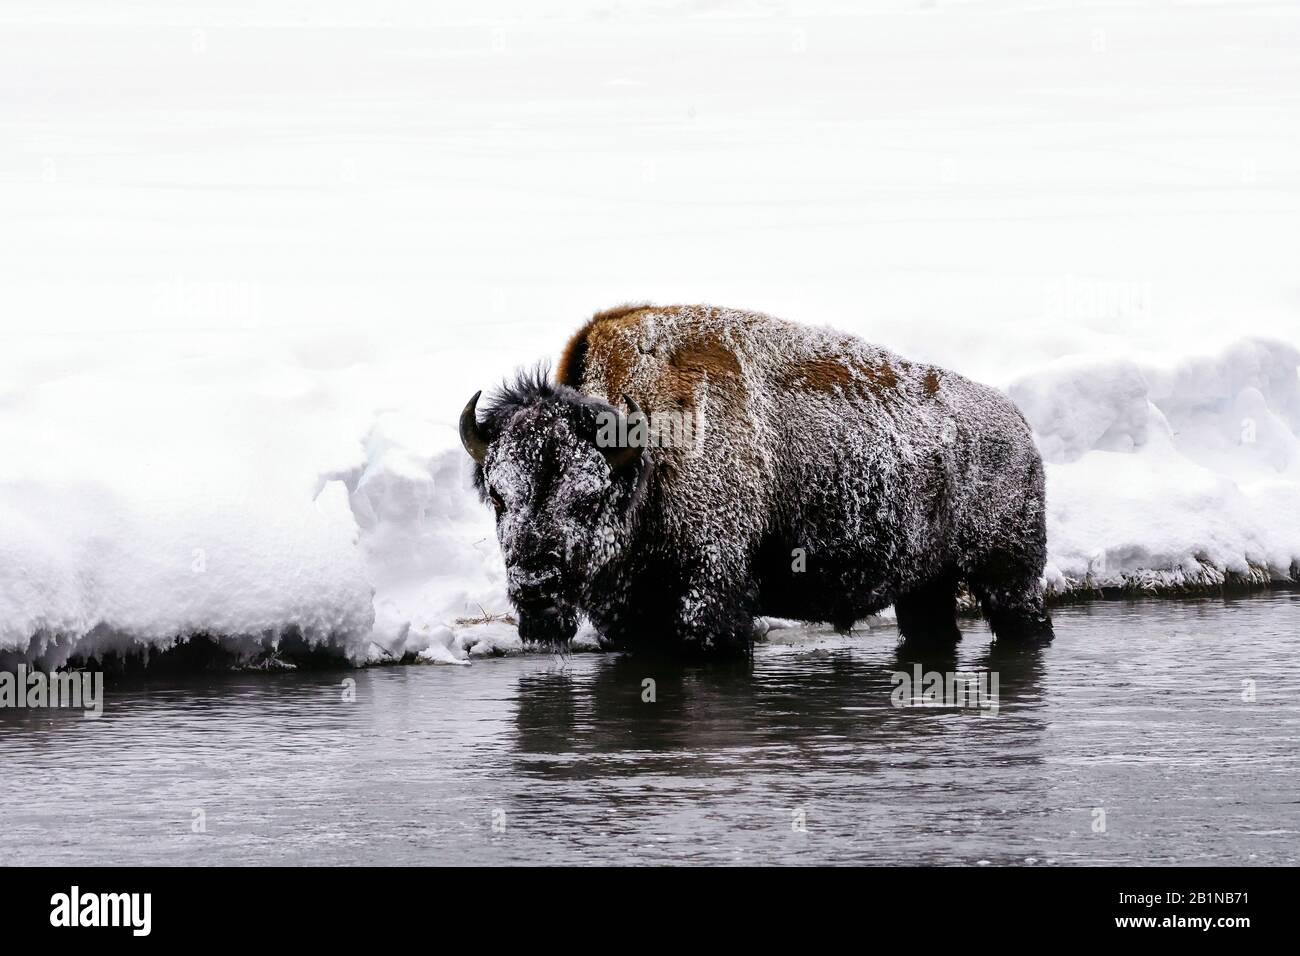 Bison américain, buffle (Bison bison), debout dans des eaux peu profondes dans le froid verglaçant, vue latérale, États-Unis, Wyoming, Yellowstone National Park Banque D'Images